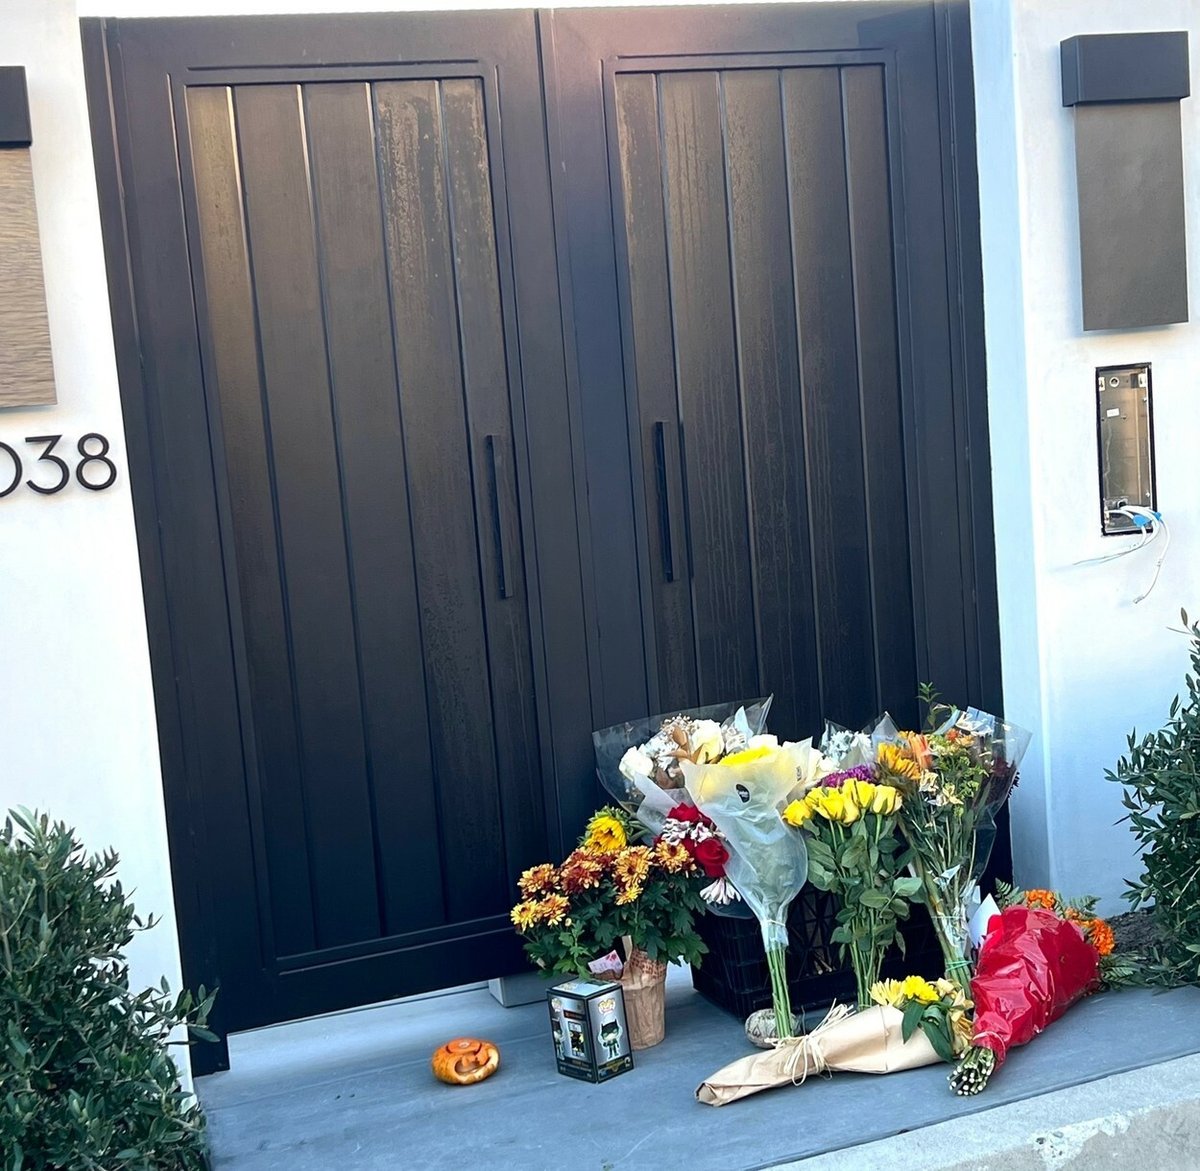 Fanoušci nosí k domu Matthewa Perryho květiny a dárky